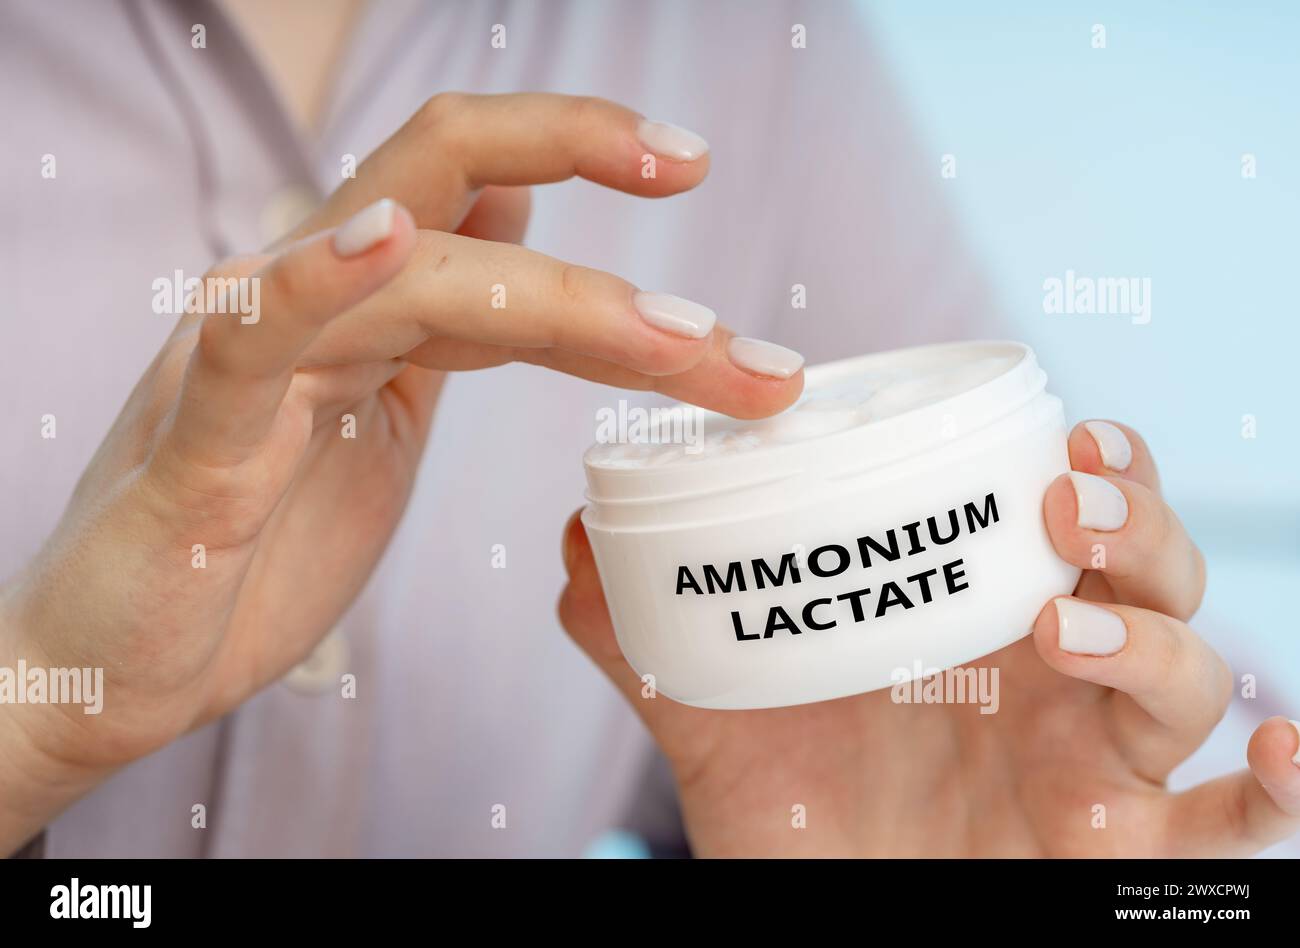 Ammonium lactate medical cream, conceptual image Stock Photo